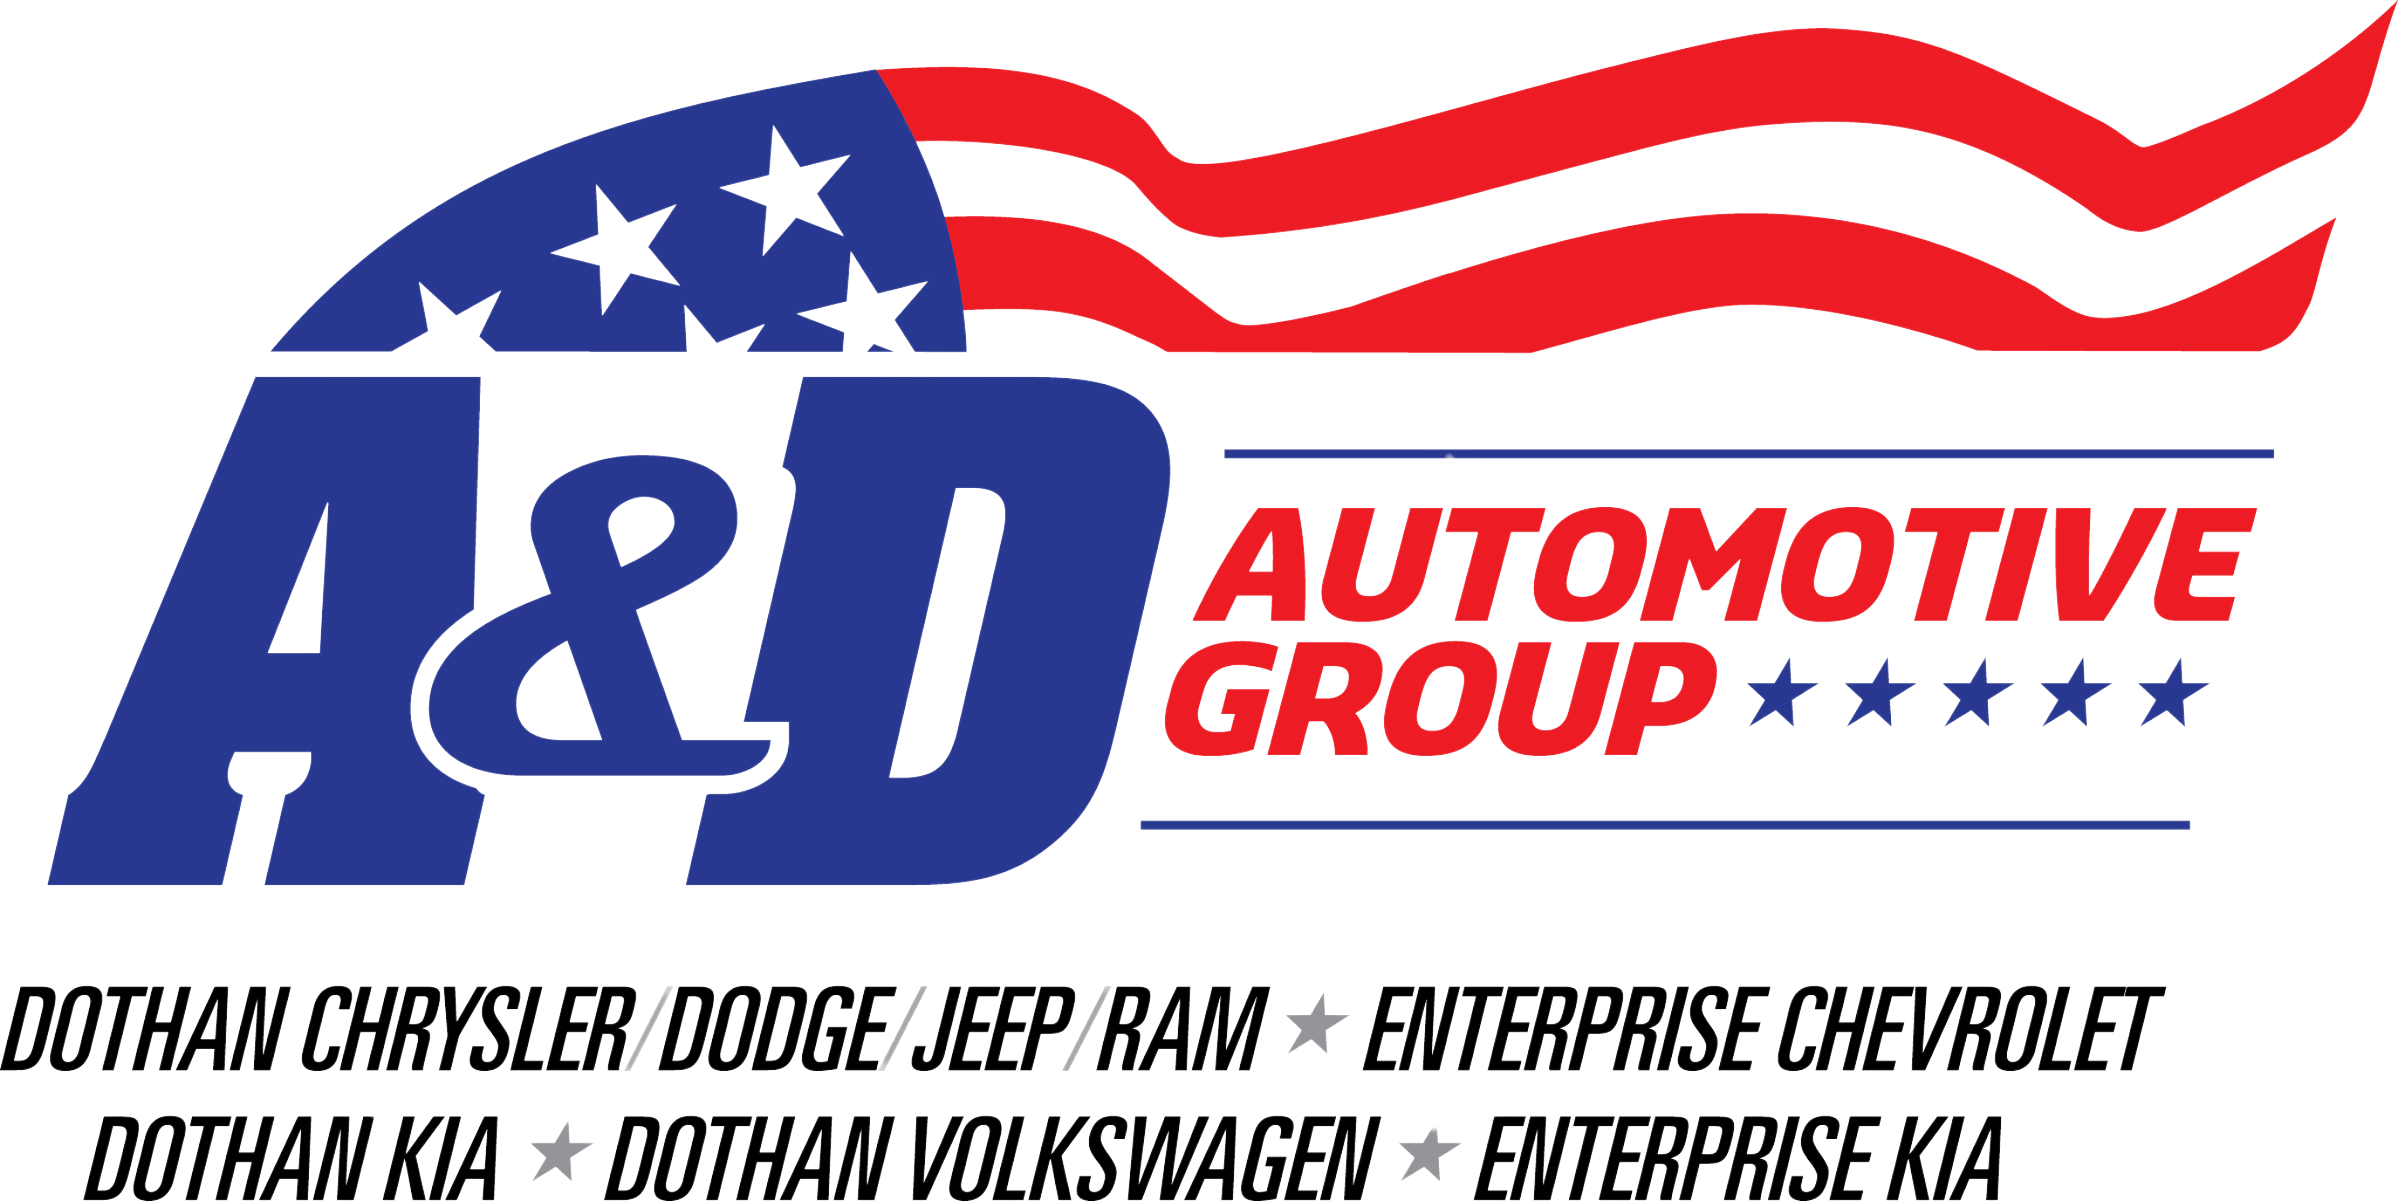 A&D Automotive